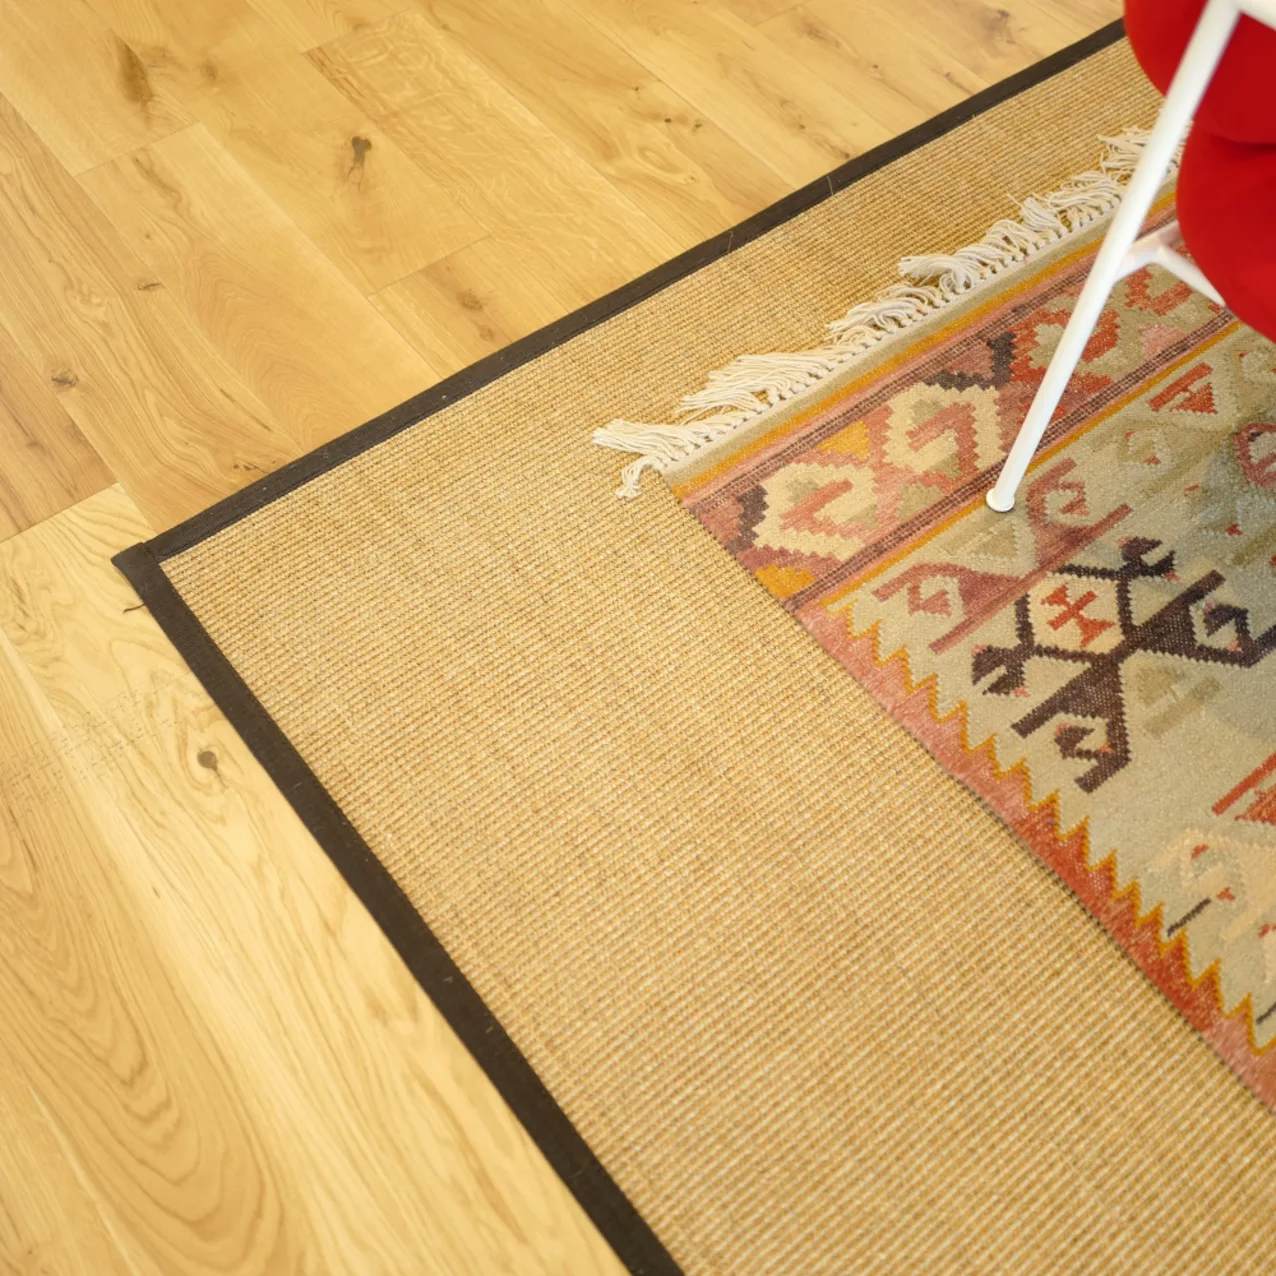 Livos Lodge sisal rug with black cloth border and layered rug on top